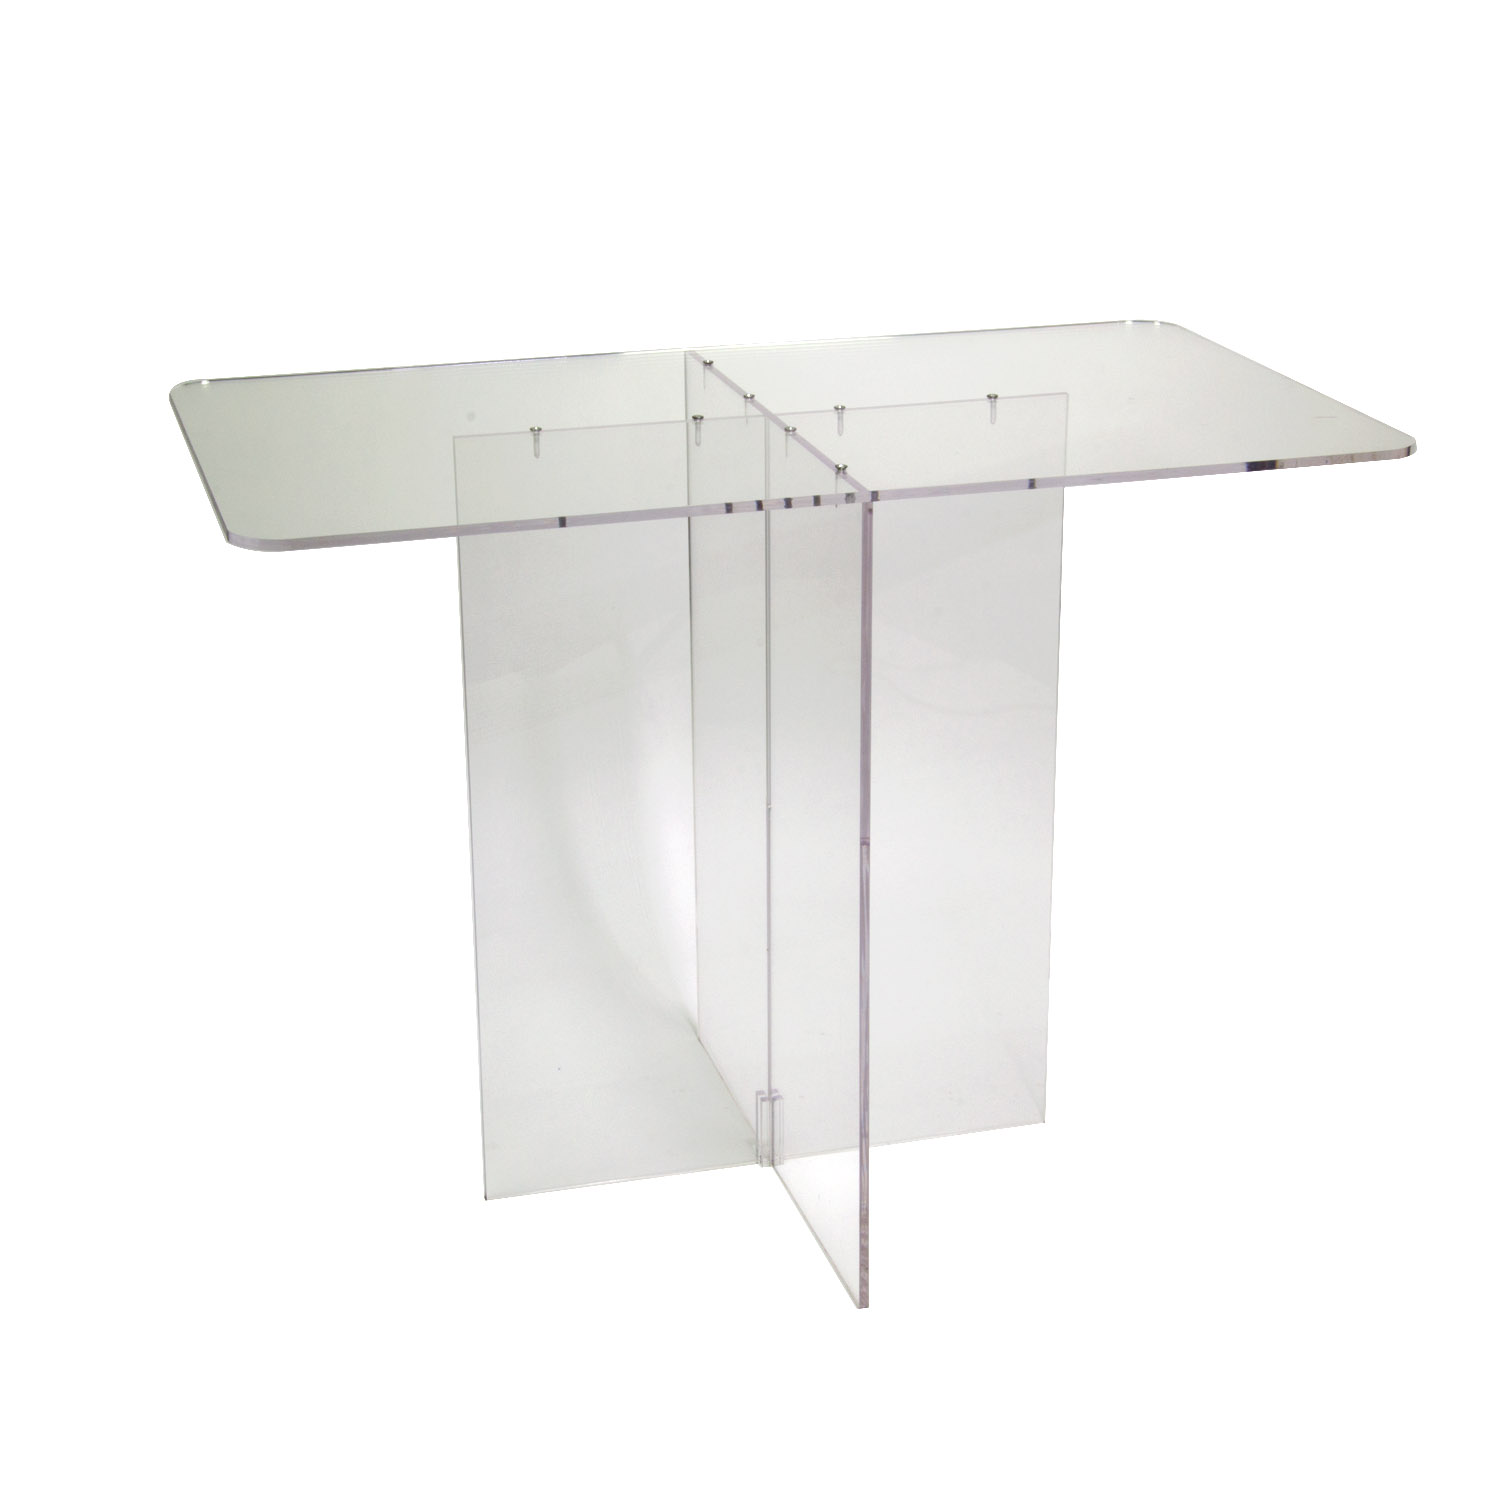 31"High Clear Acrylic Table |